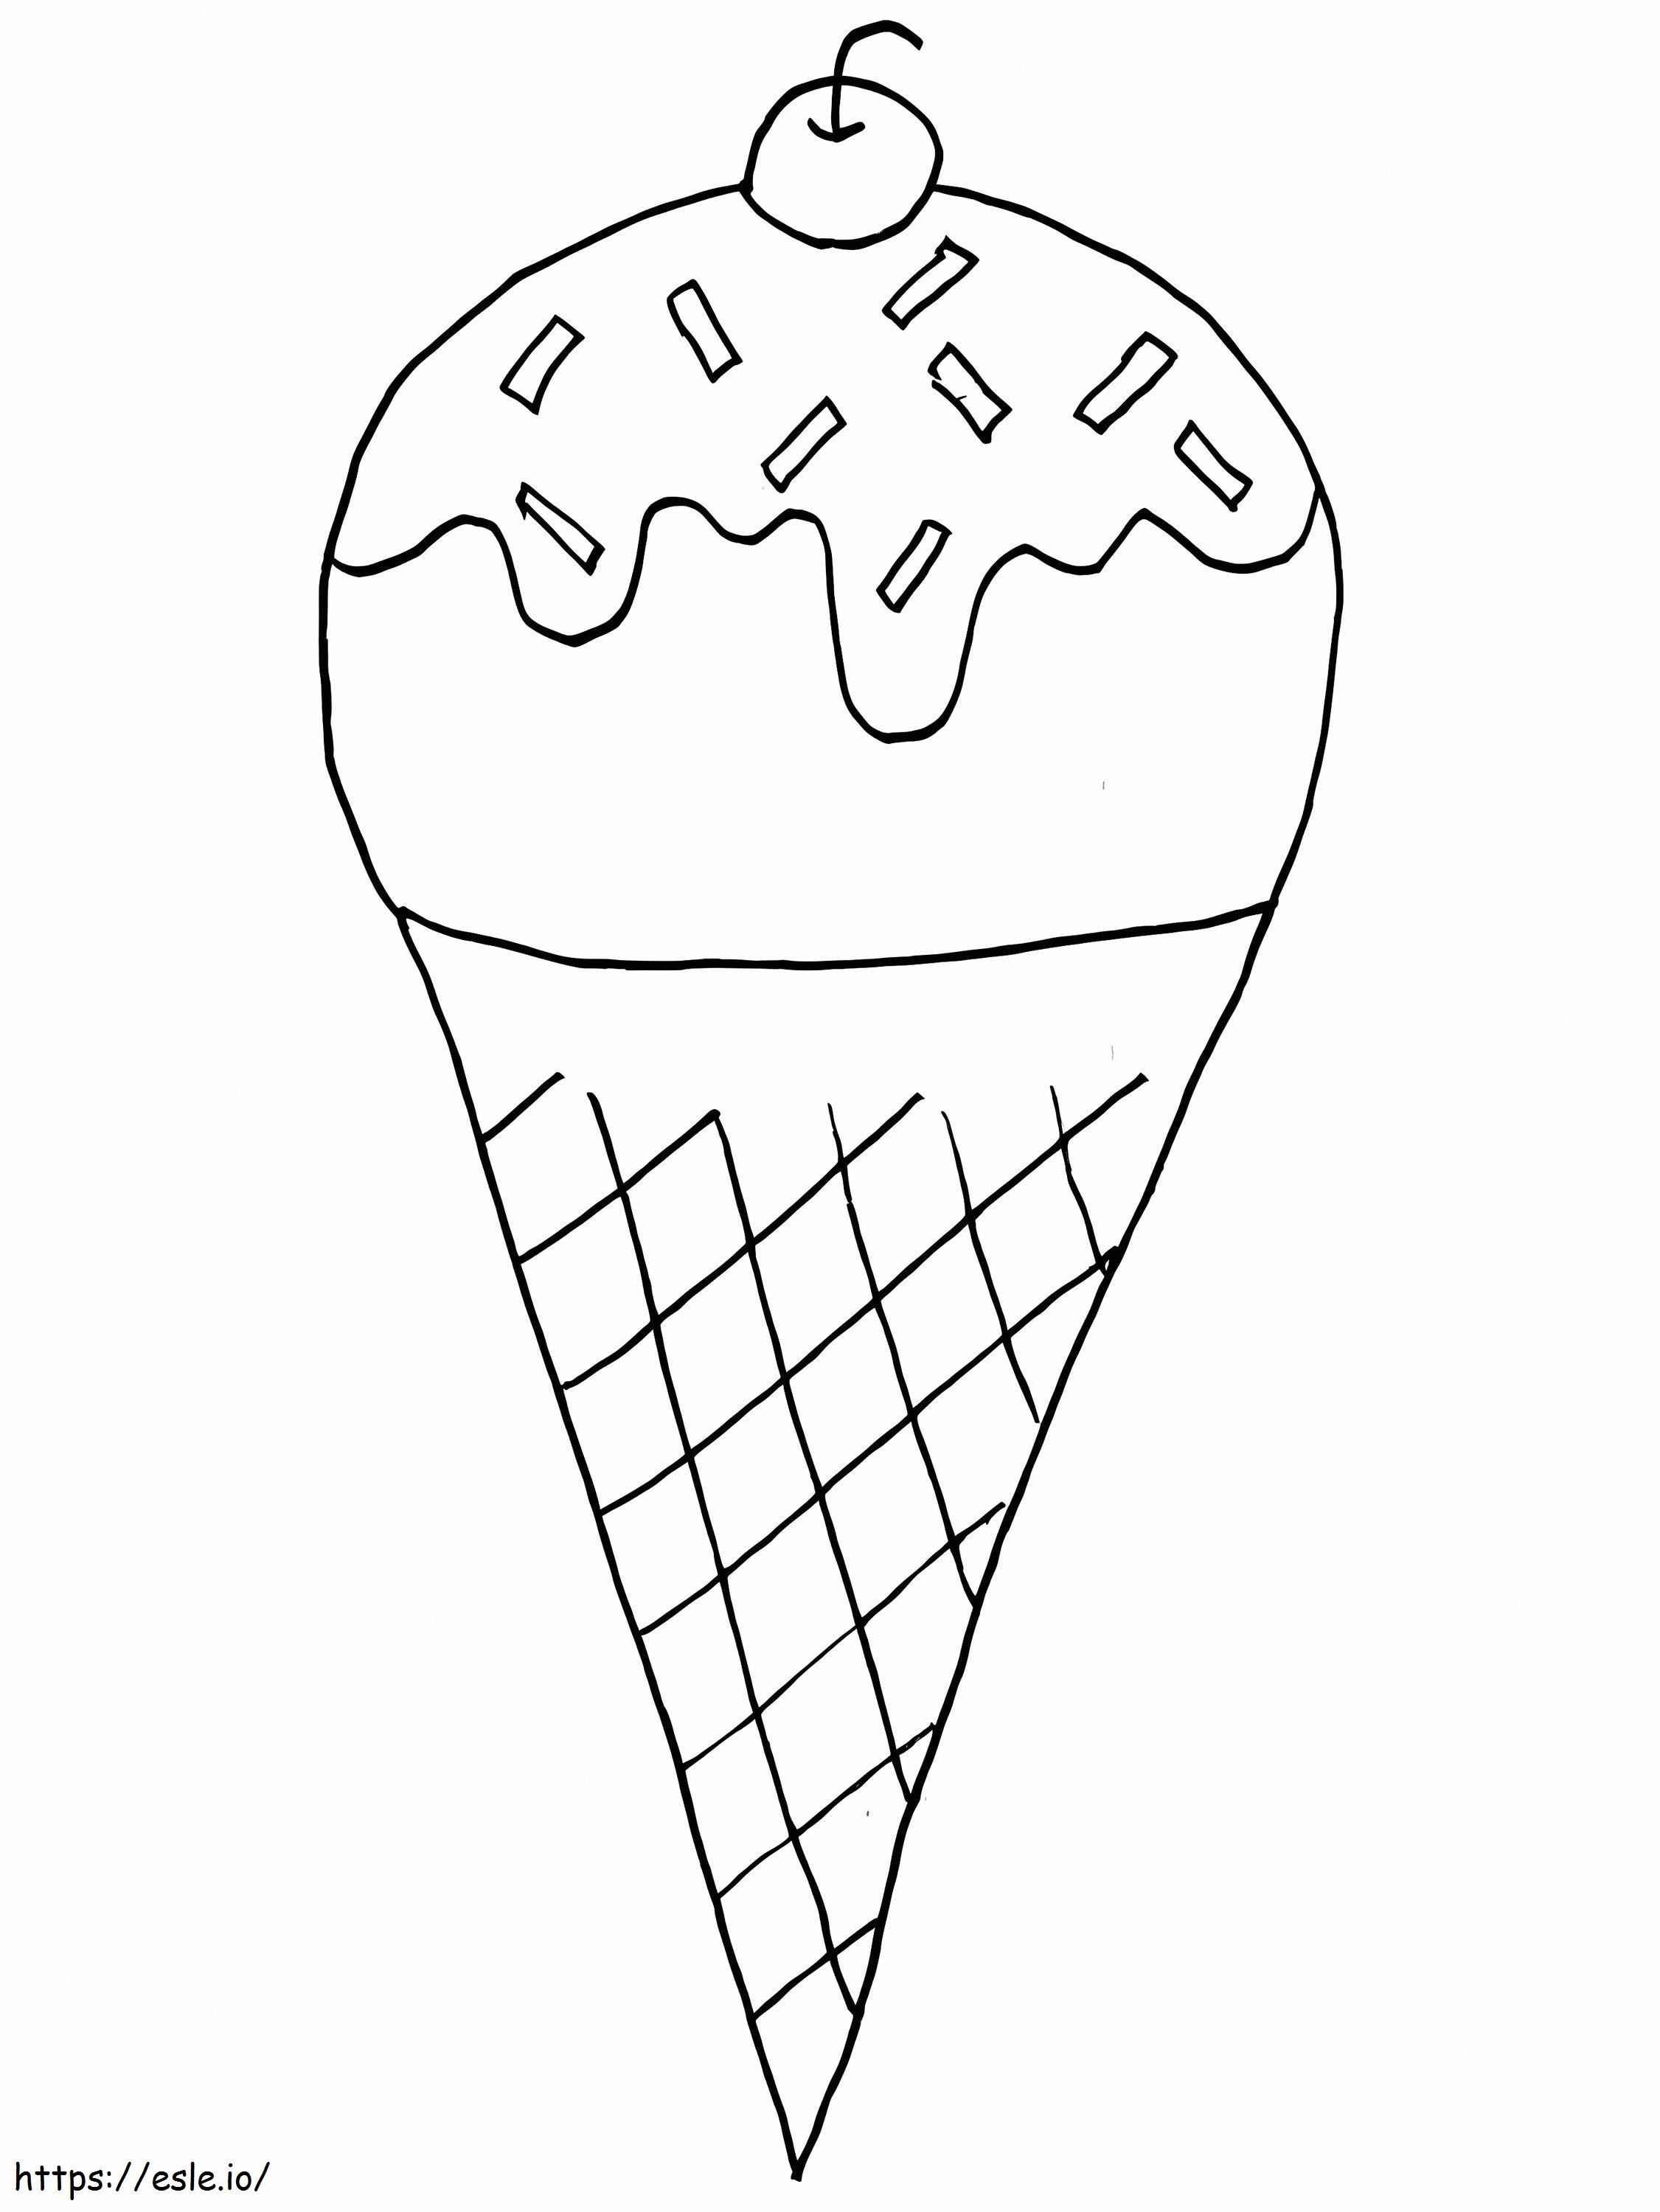 Înghețată delicioasă de colorat